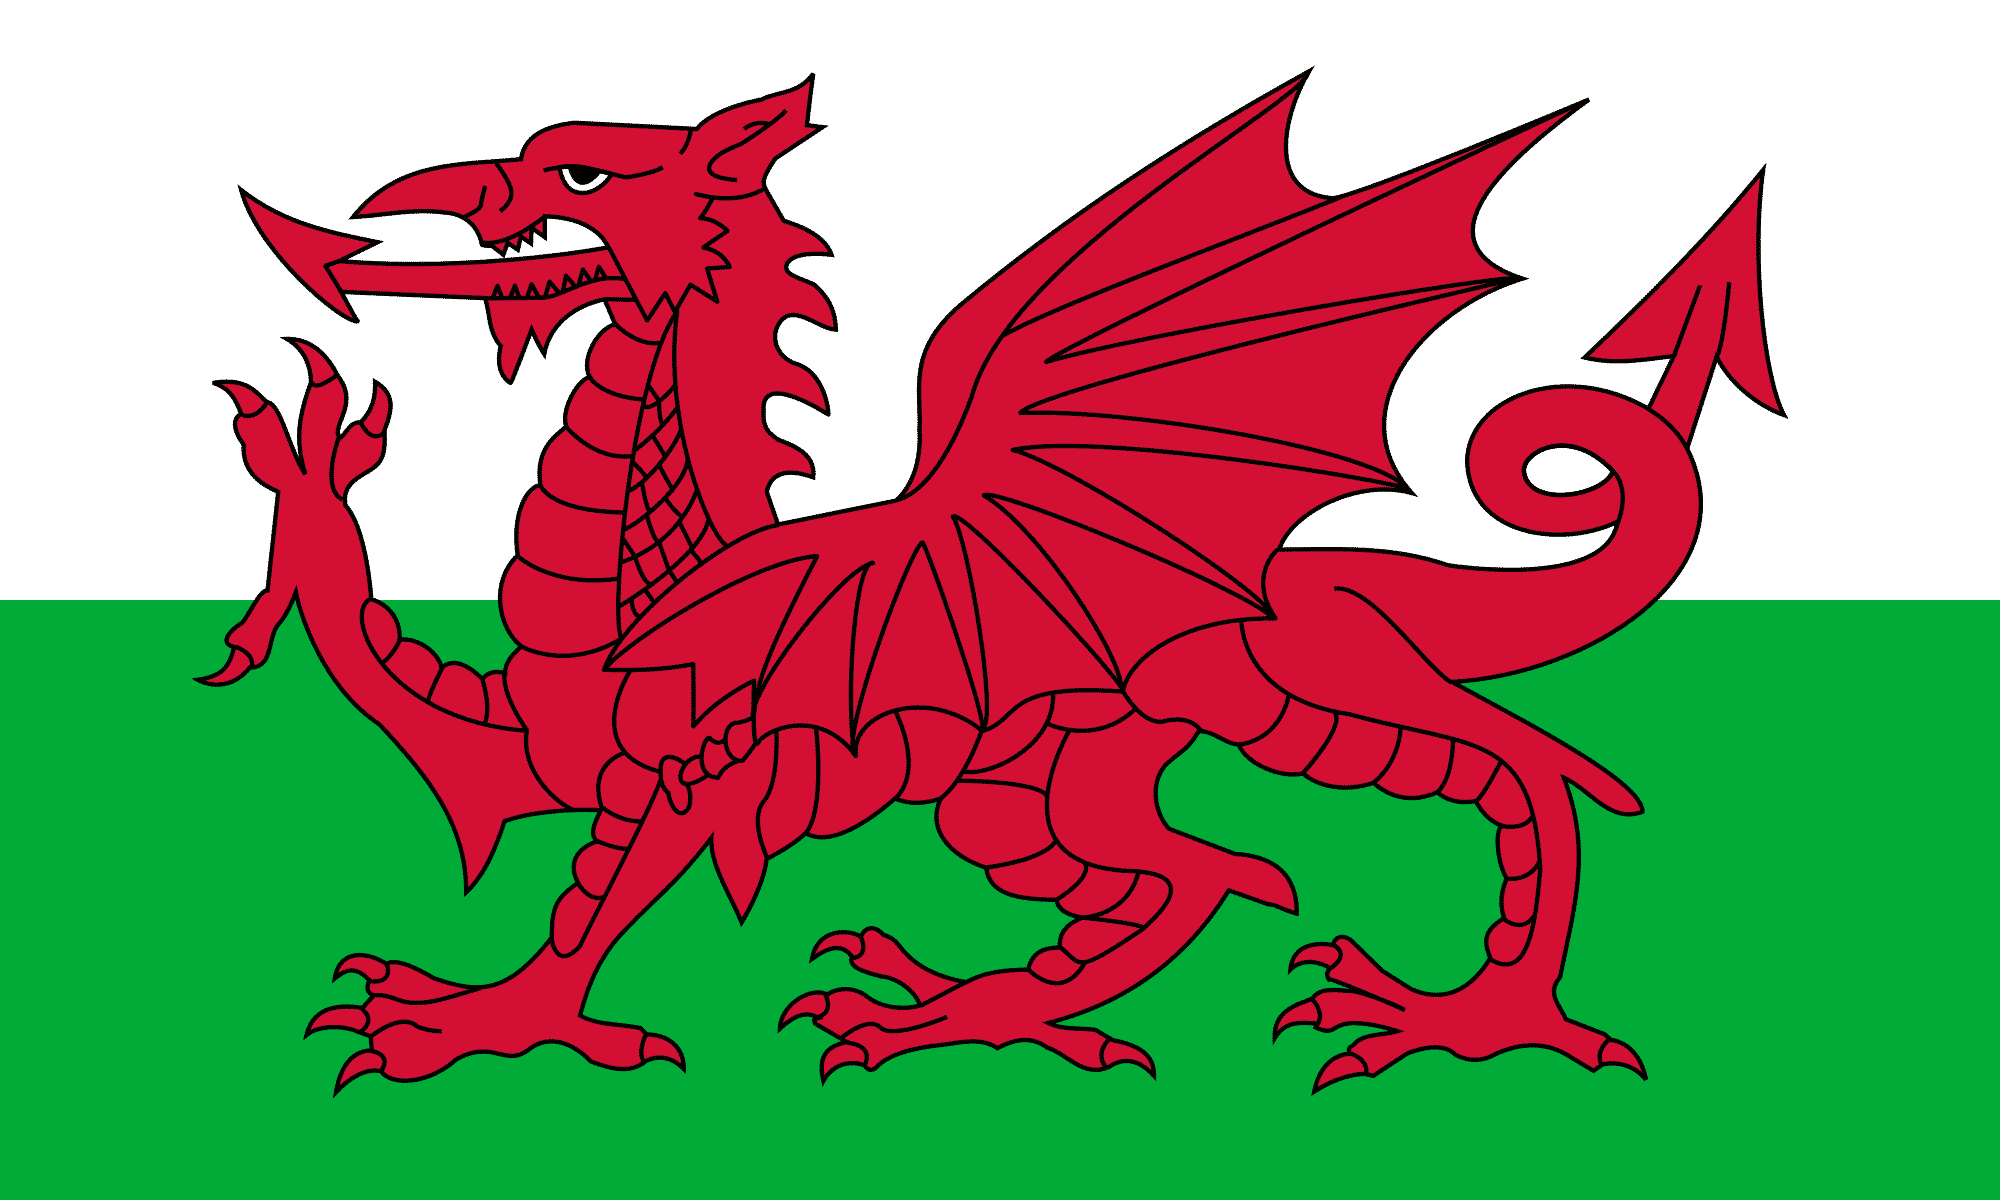 País de Gales - História, características, localização, geografia e economia